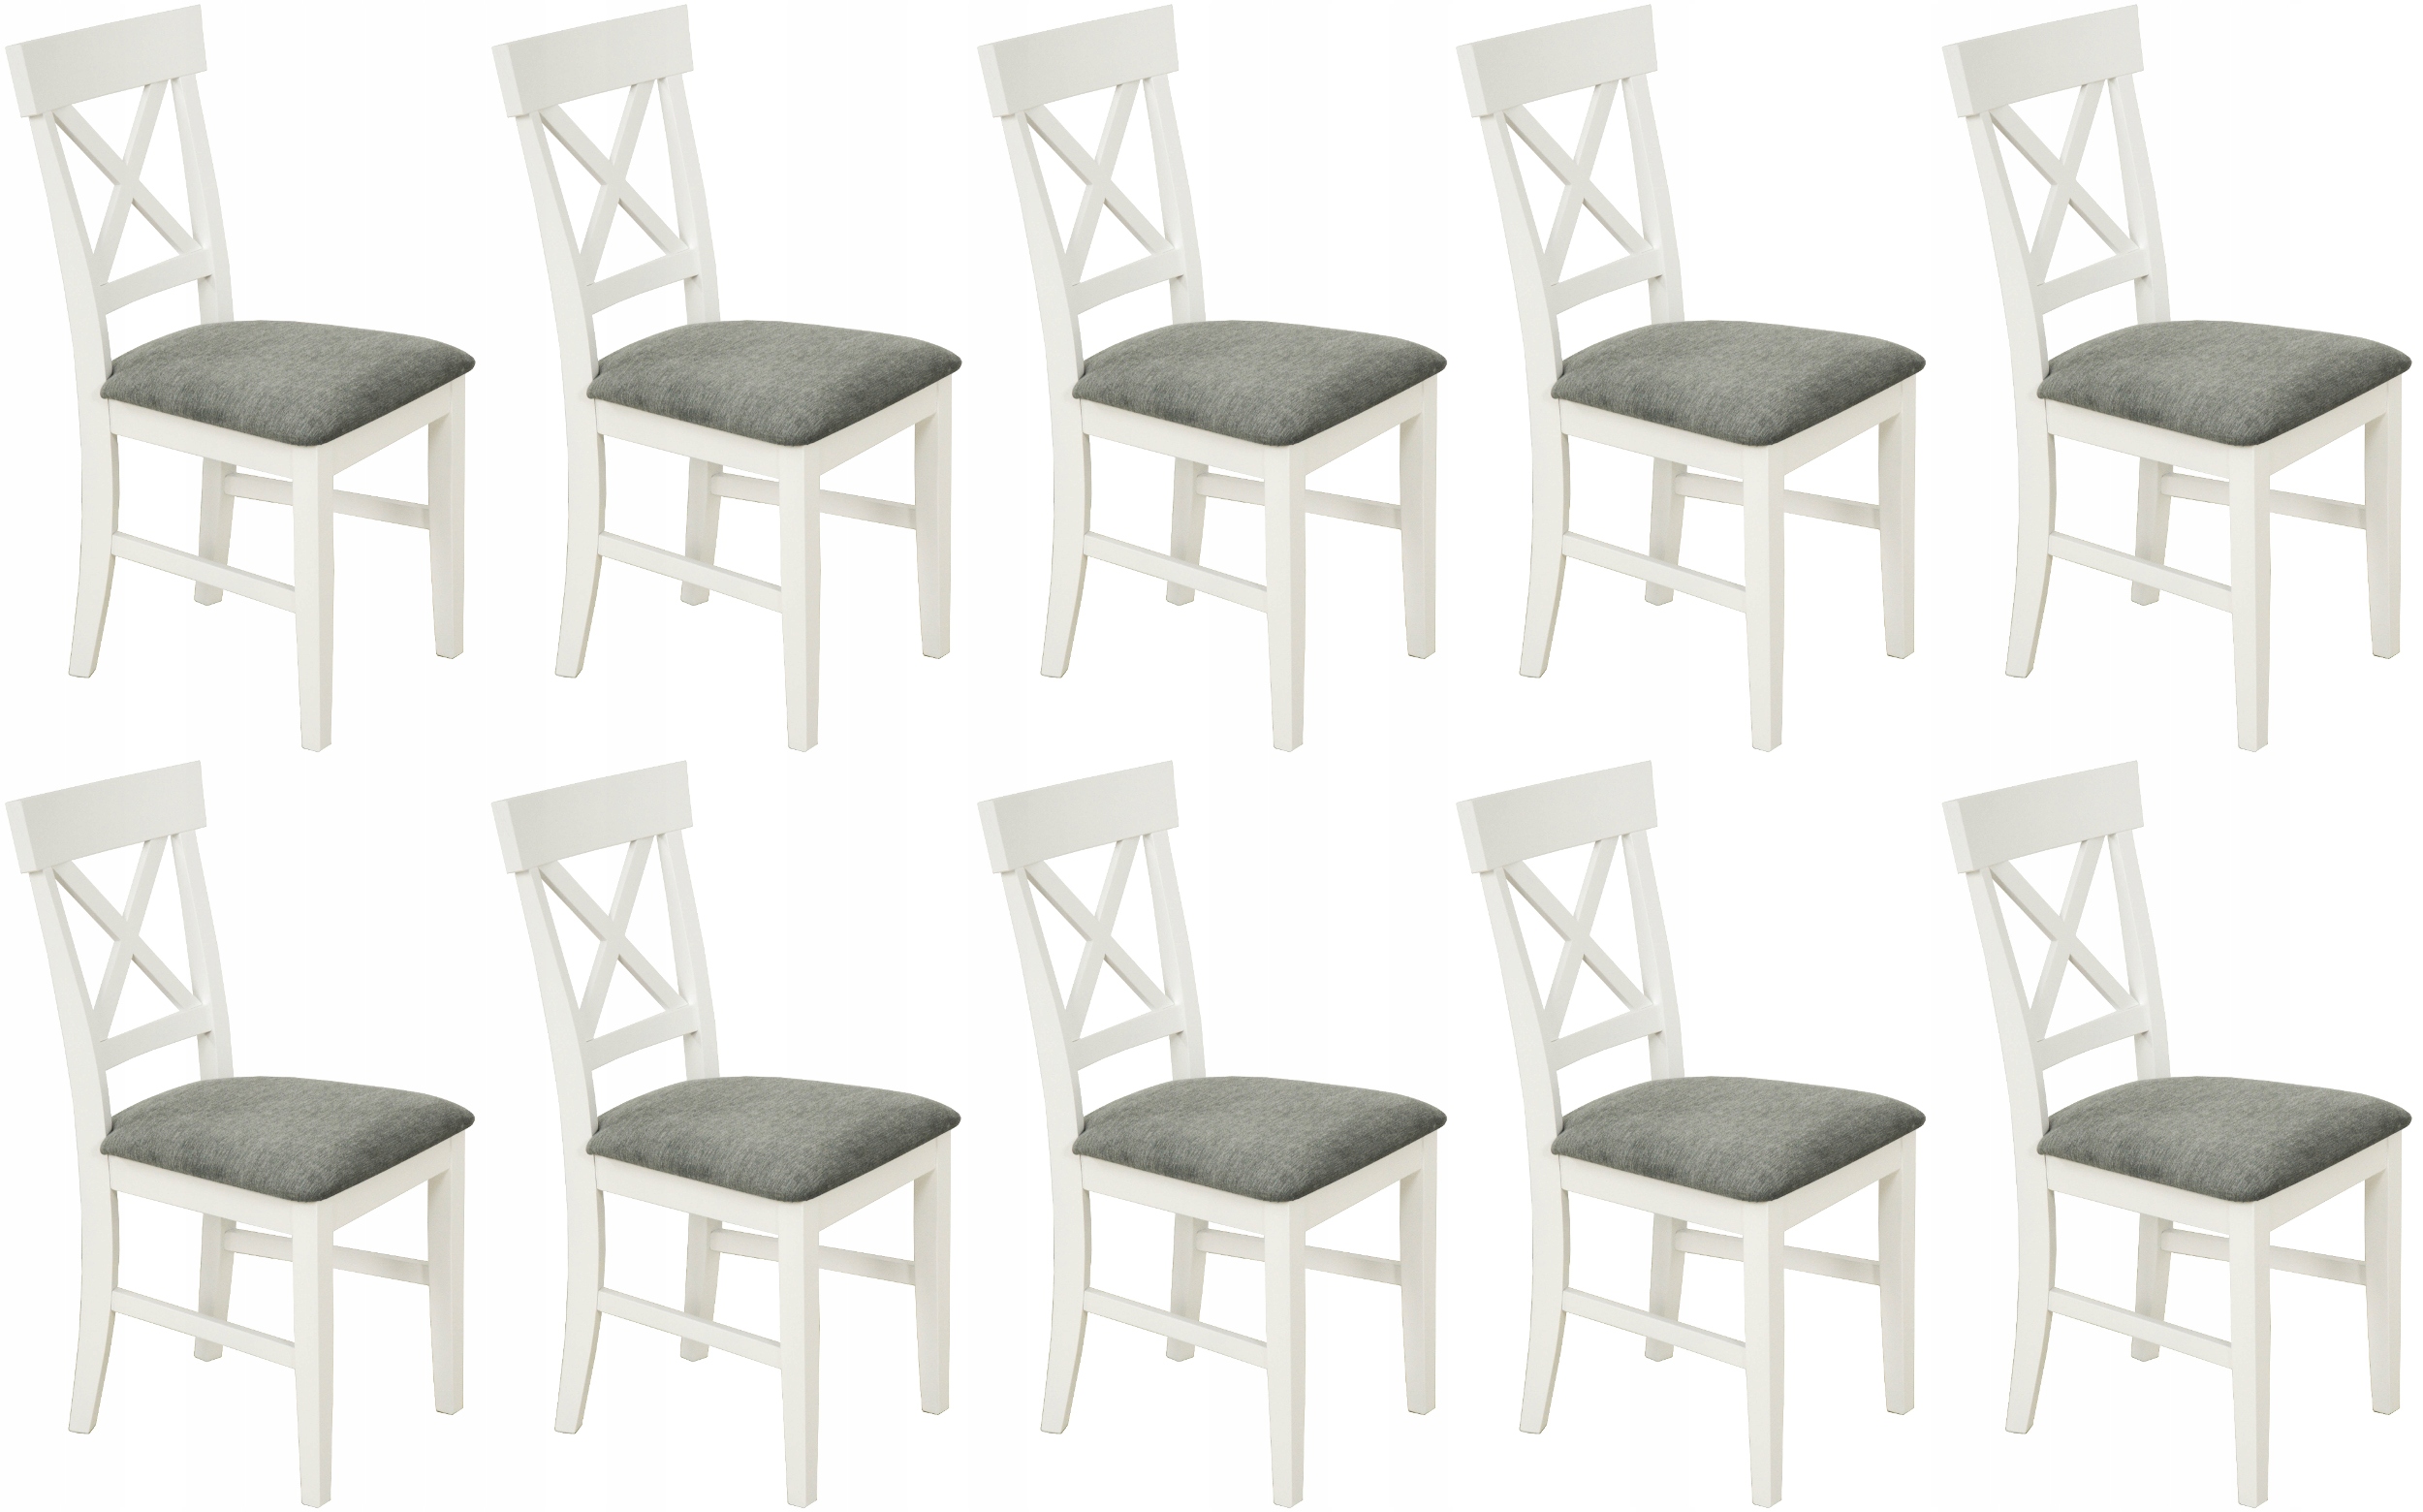 Sada 10 Biela Stoličky vyrobené z dreva Provence